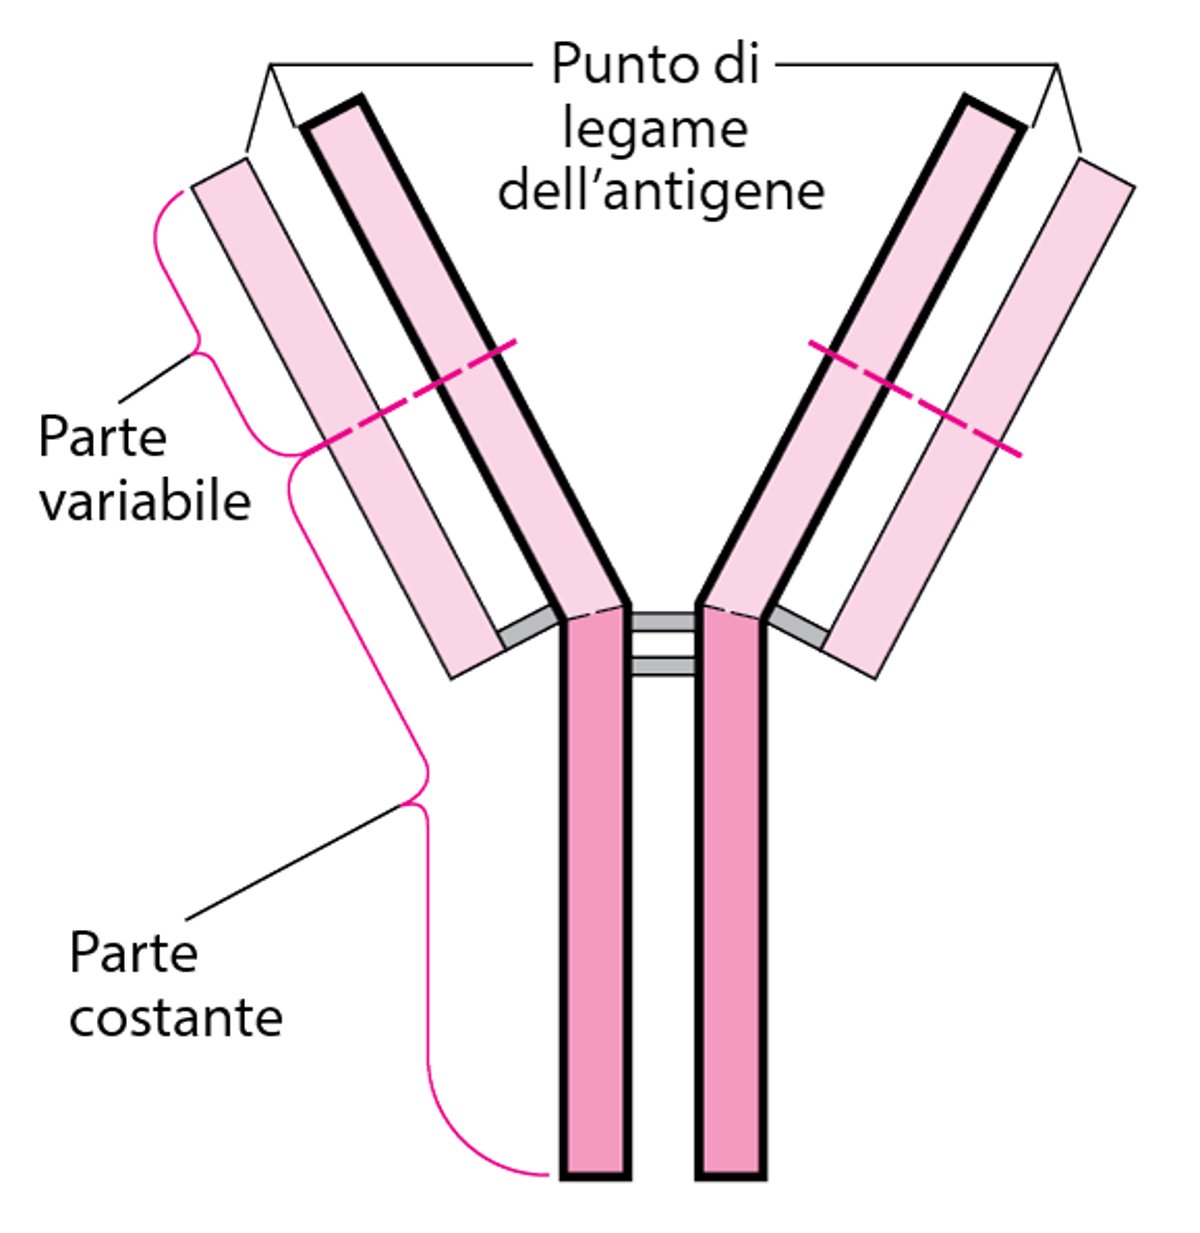 Struttura di base a Y degli anticorpi